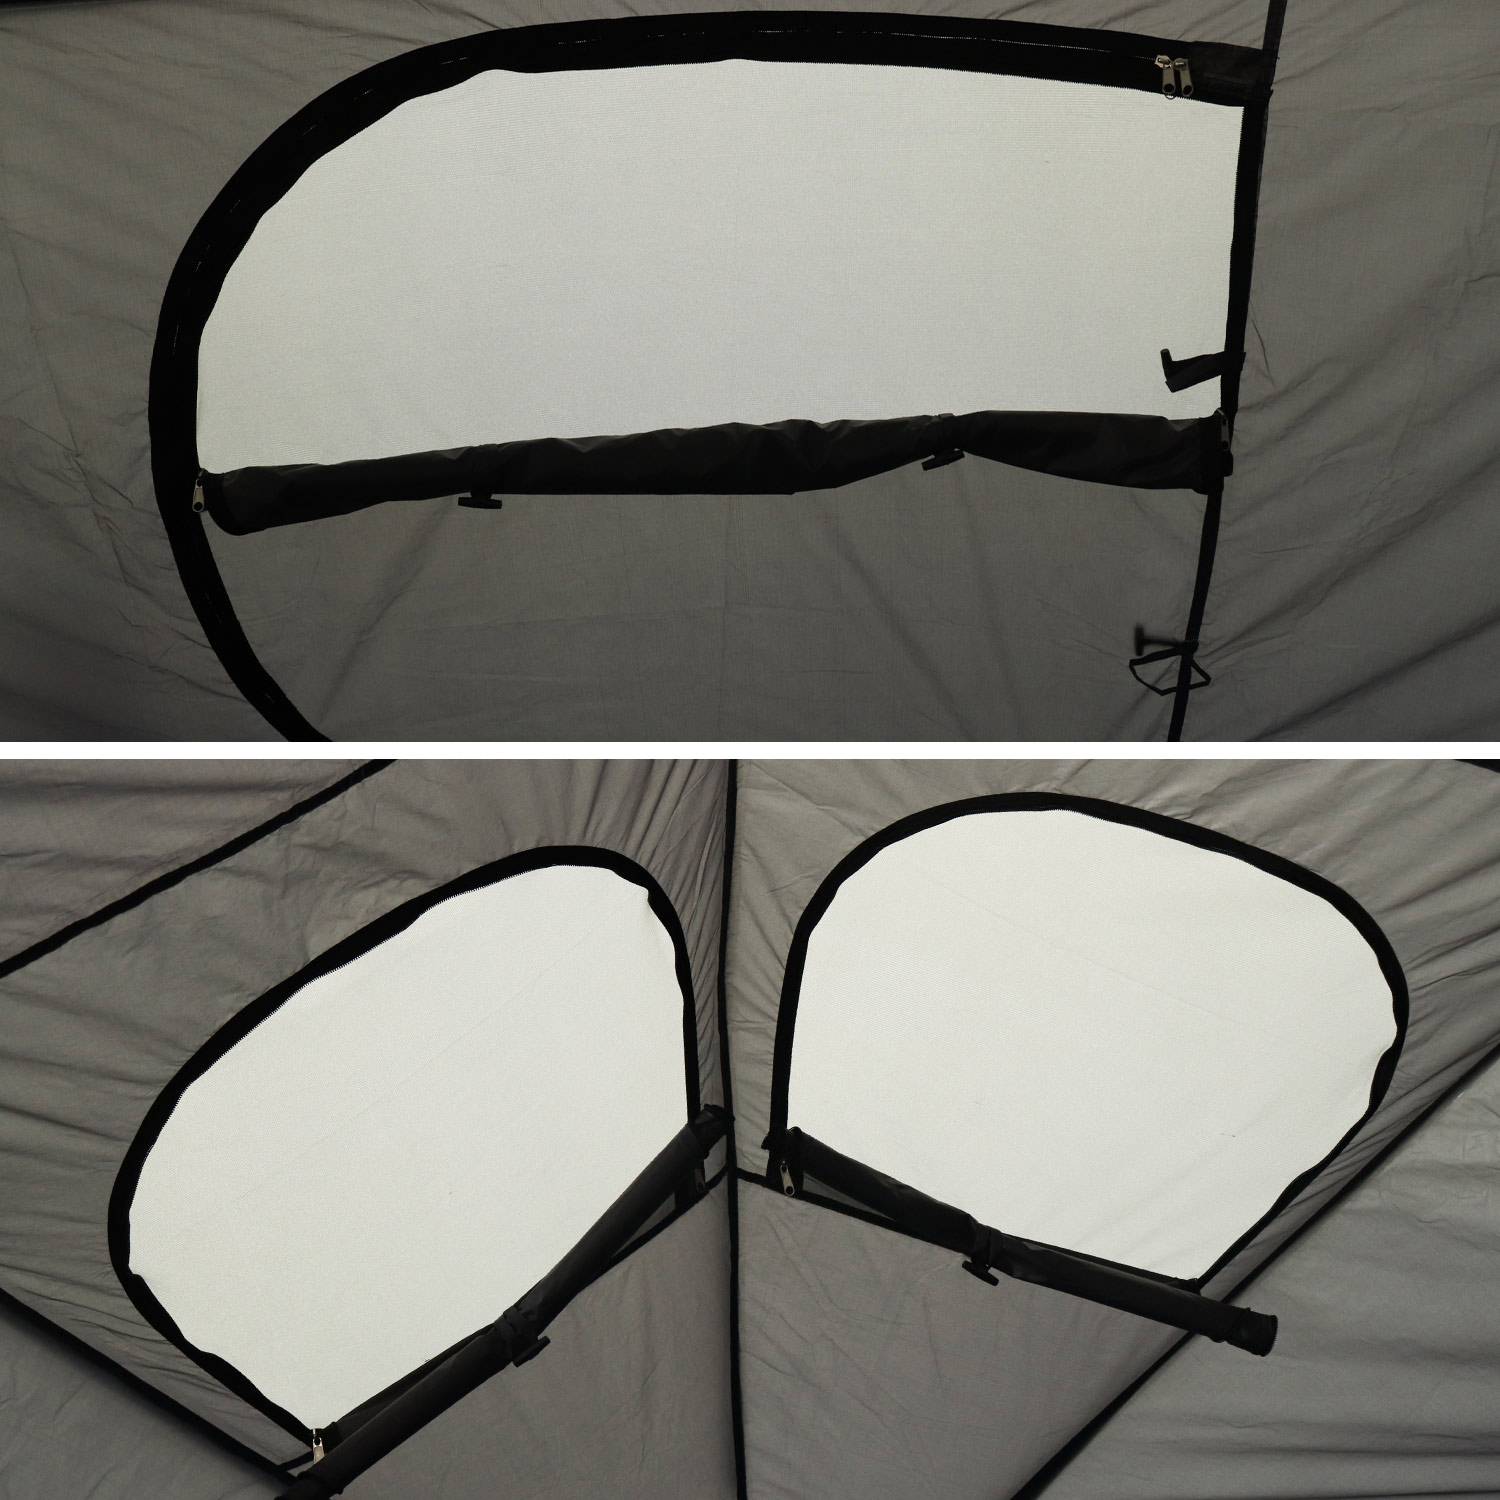 Tenda de campismo para trampolim Ø305cm (rede interior e exterior) em poliéster, com tratamento UV, 2 portas, 4 janelas e saco de transporte Photo5